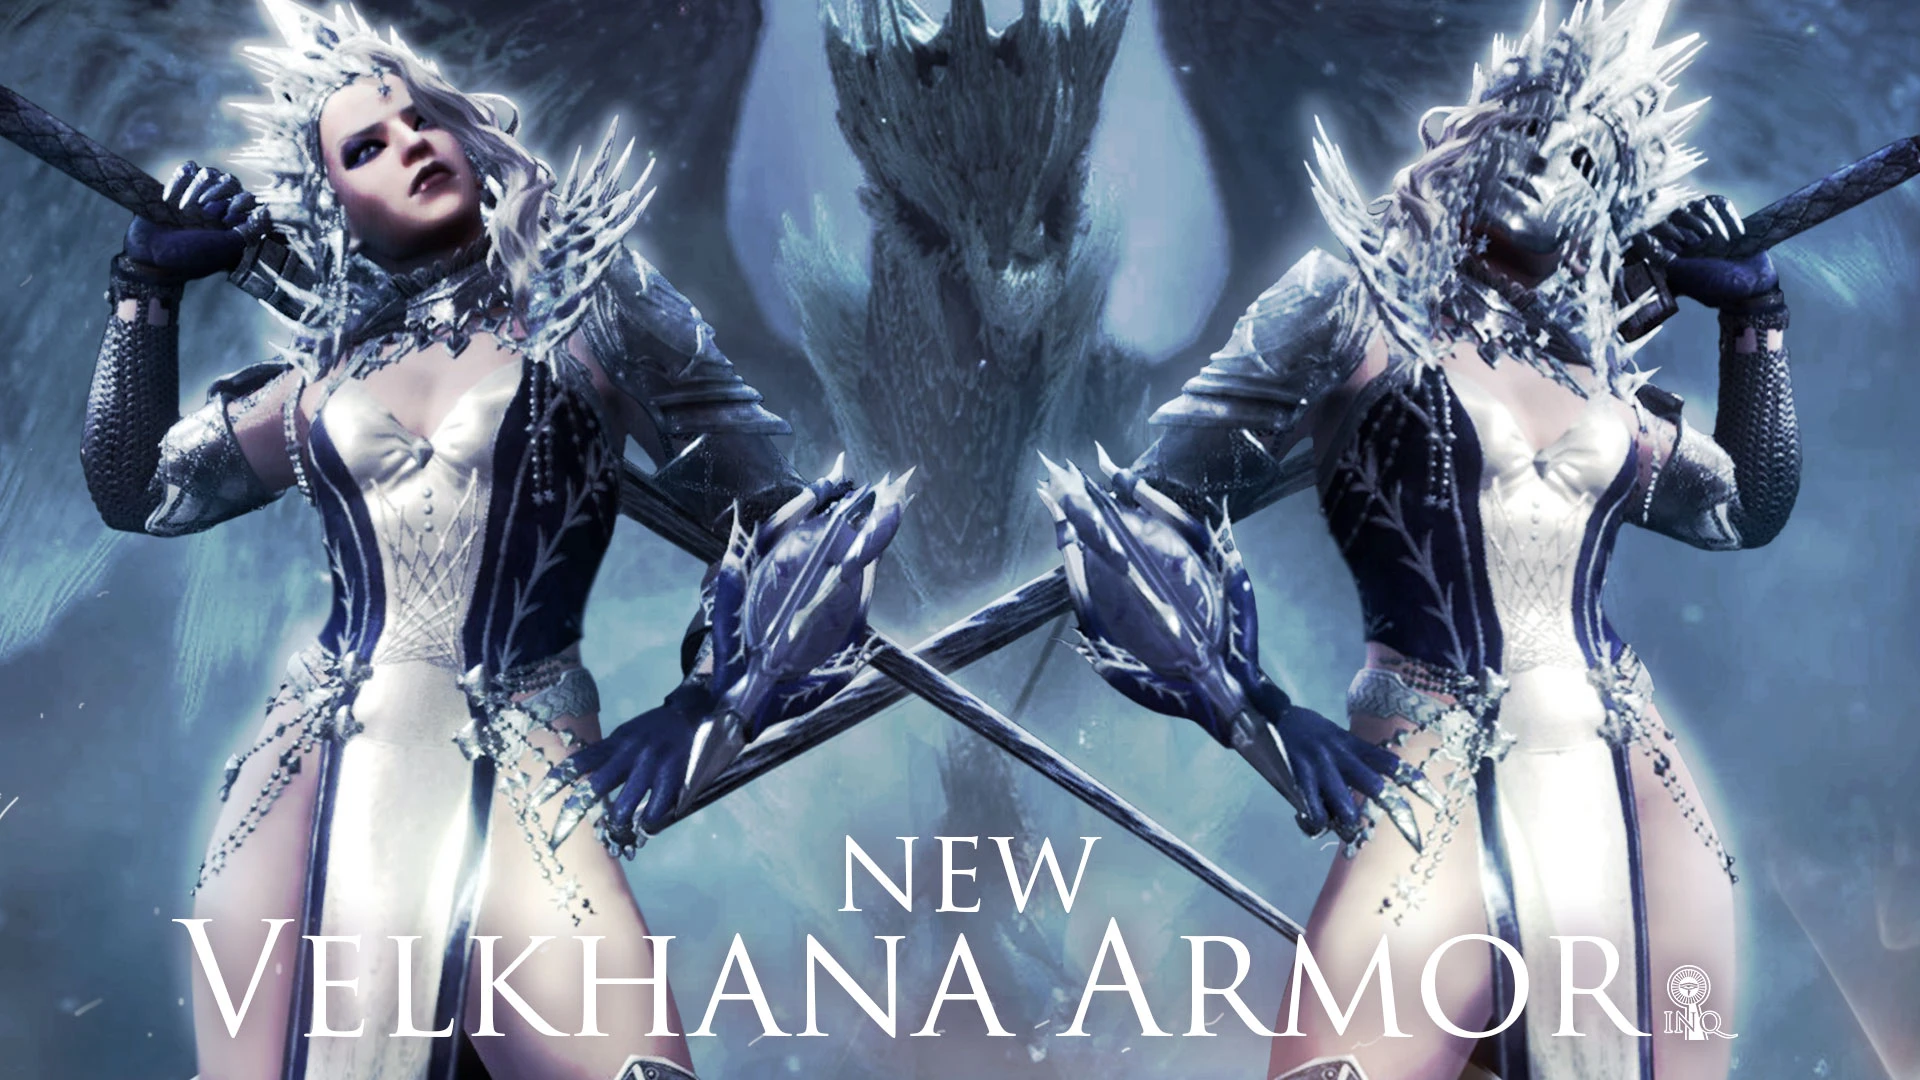 New Velkhana Armor.